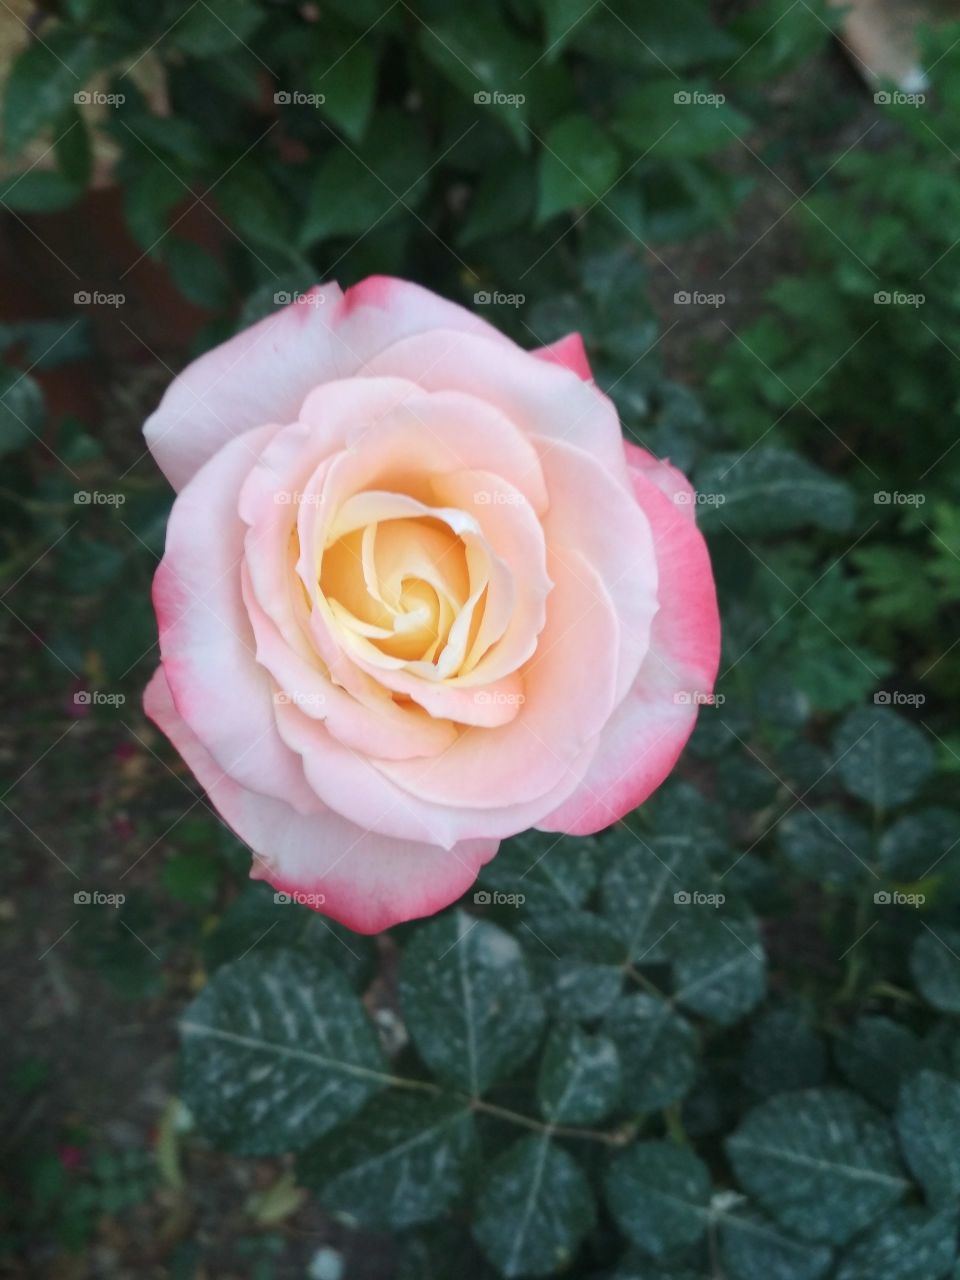 so pretty rose